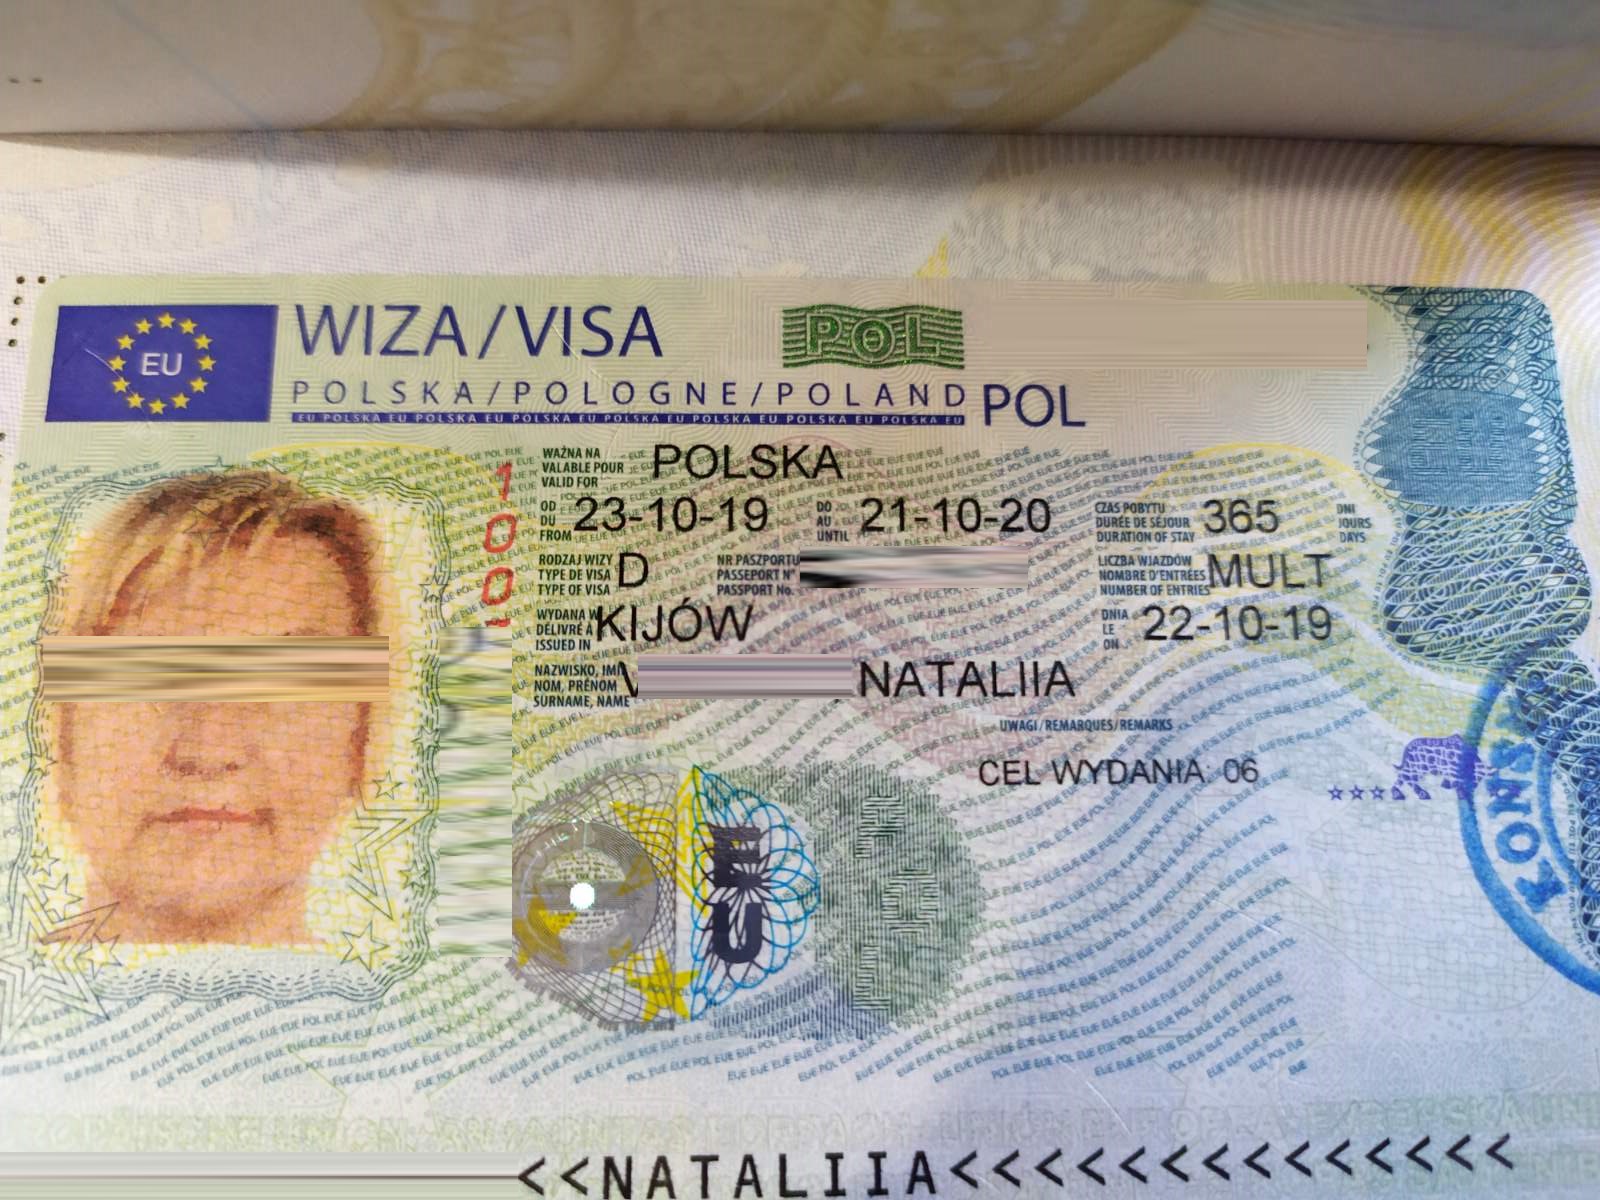 Студенческая виза в польшу - требования к заявителю, срок действия